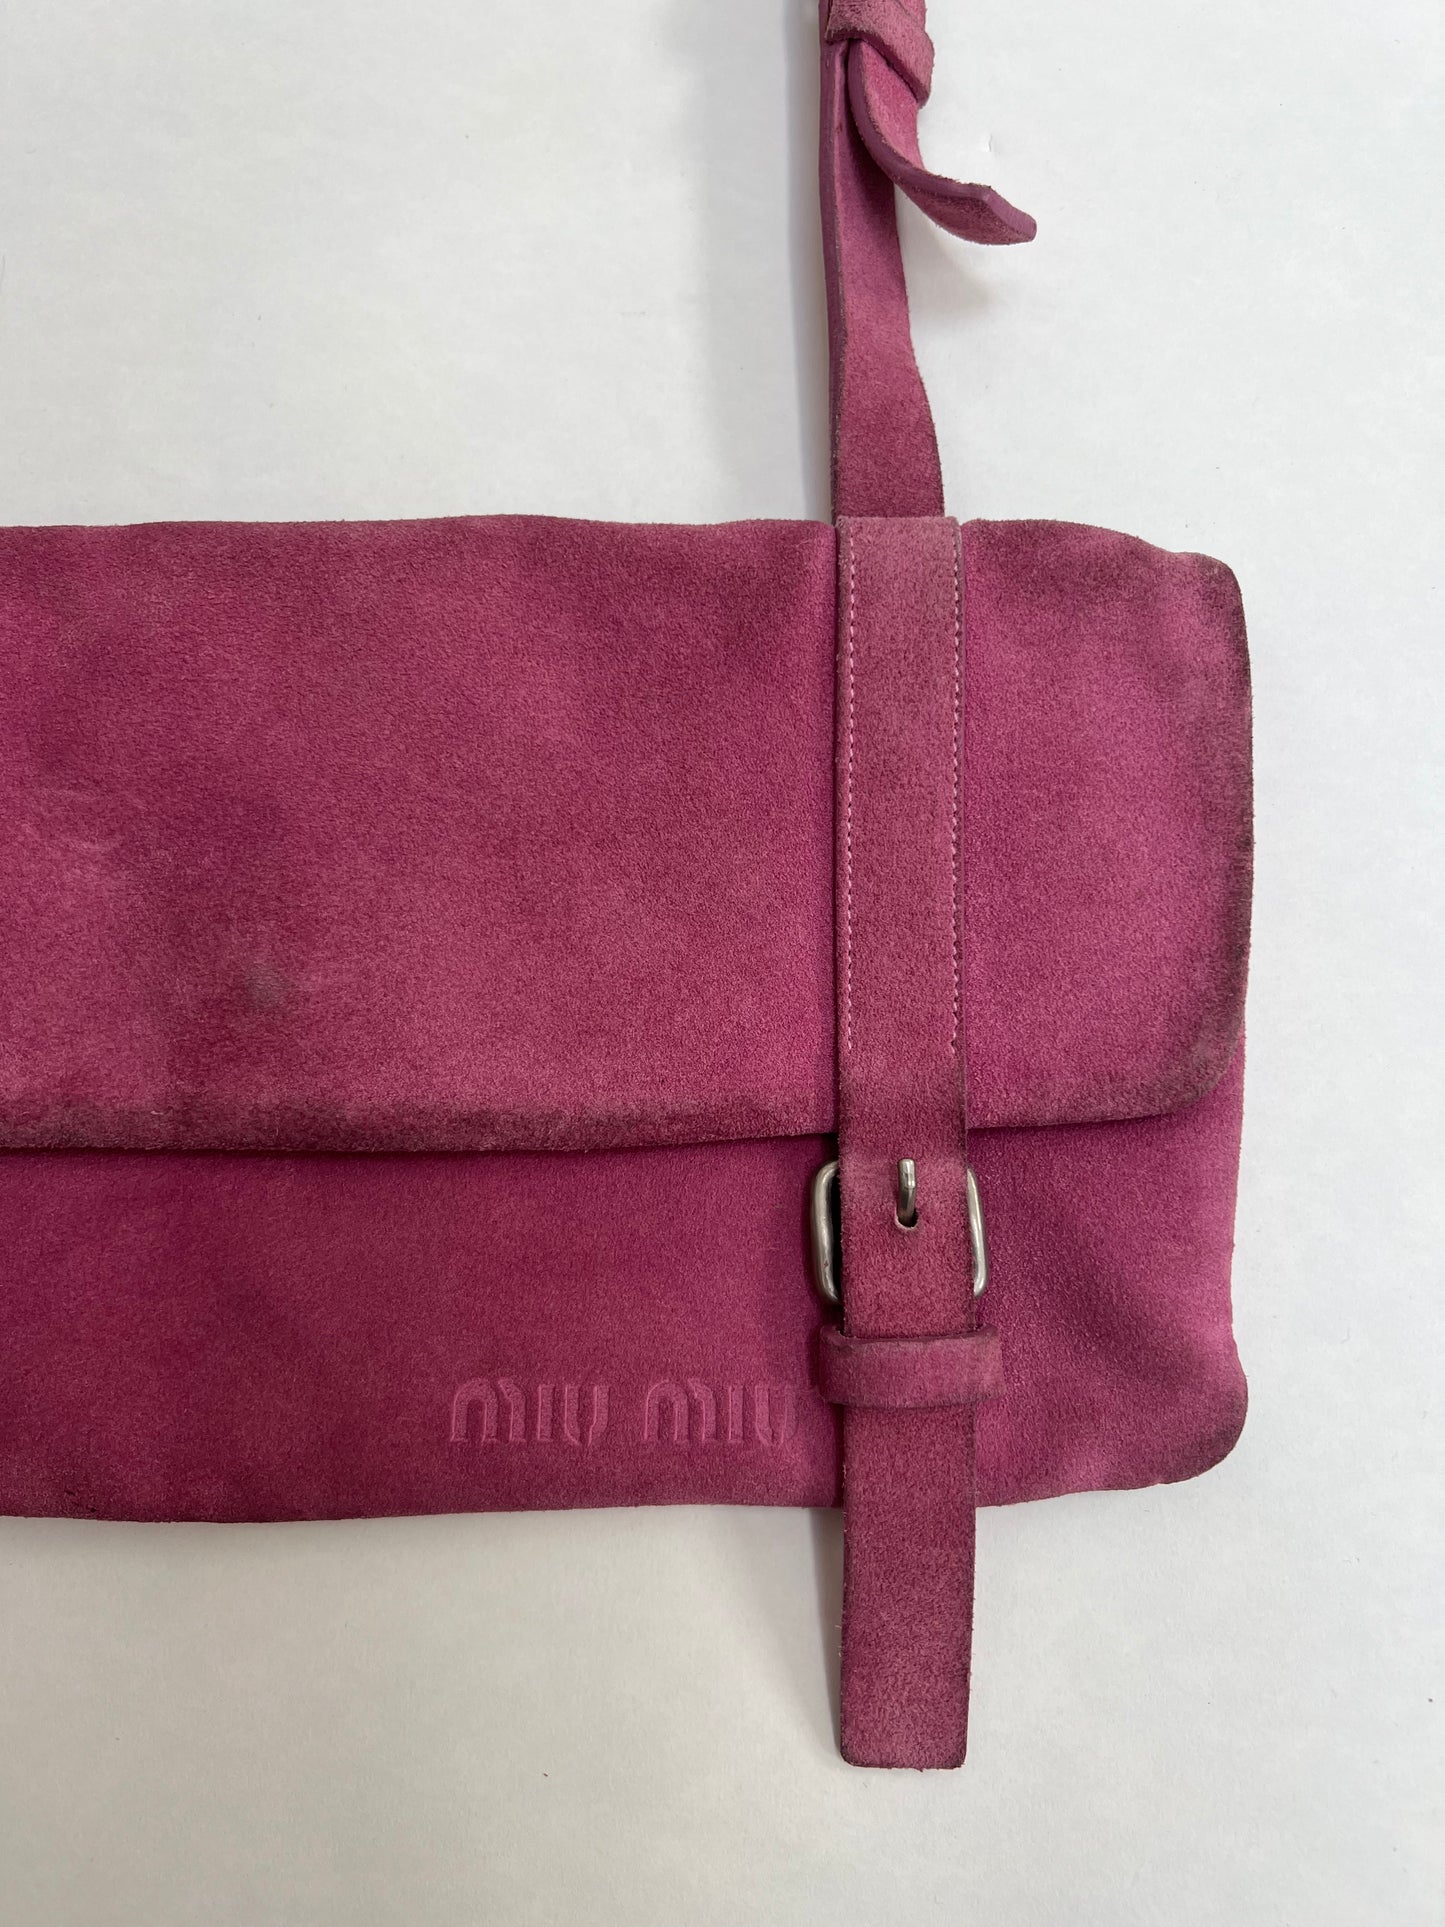 Miu Miu SS 2000 suede buckle bag